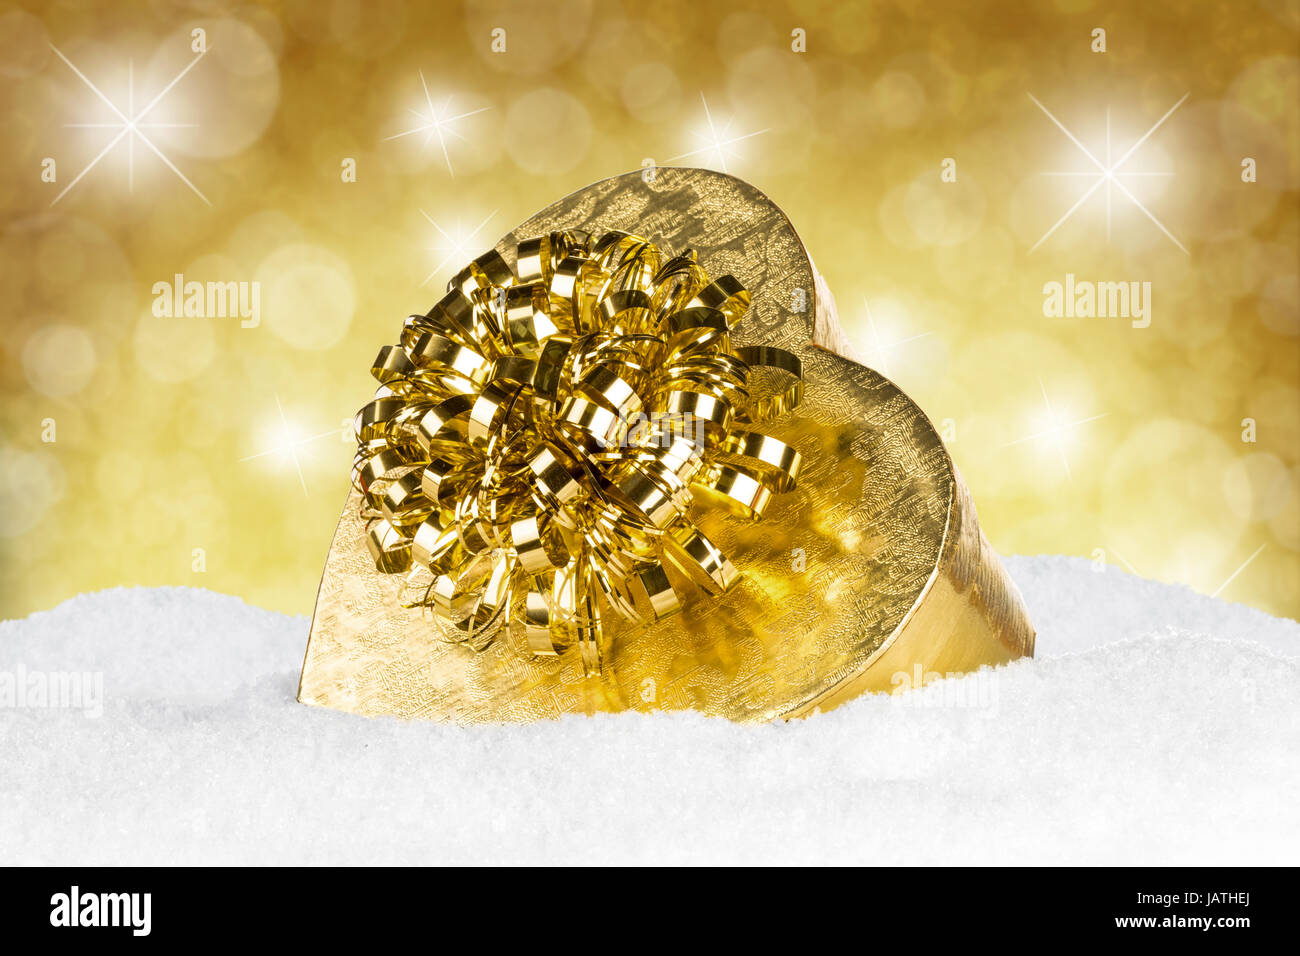 goldenes geschenk auf schnee vor goldenem hintergrung Stock Photo